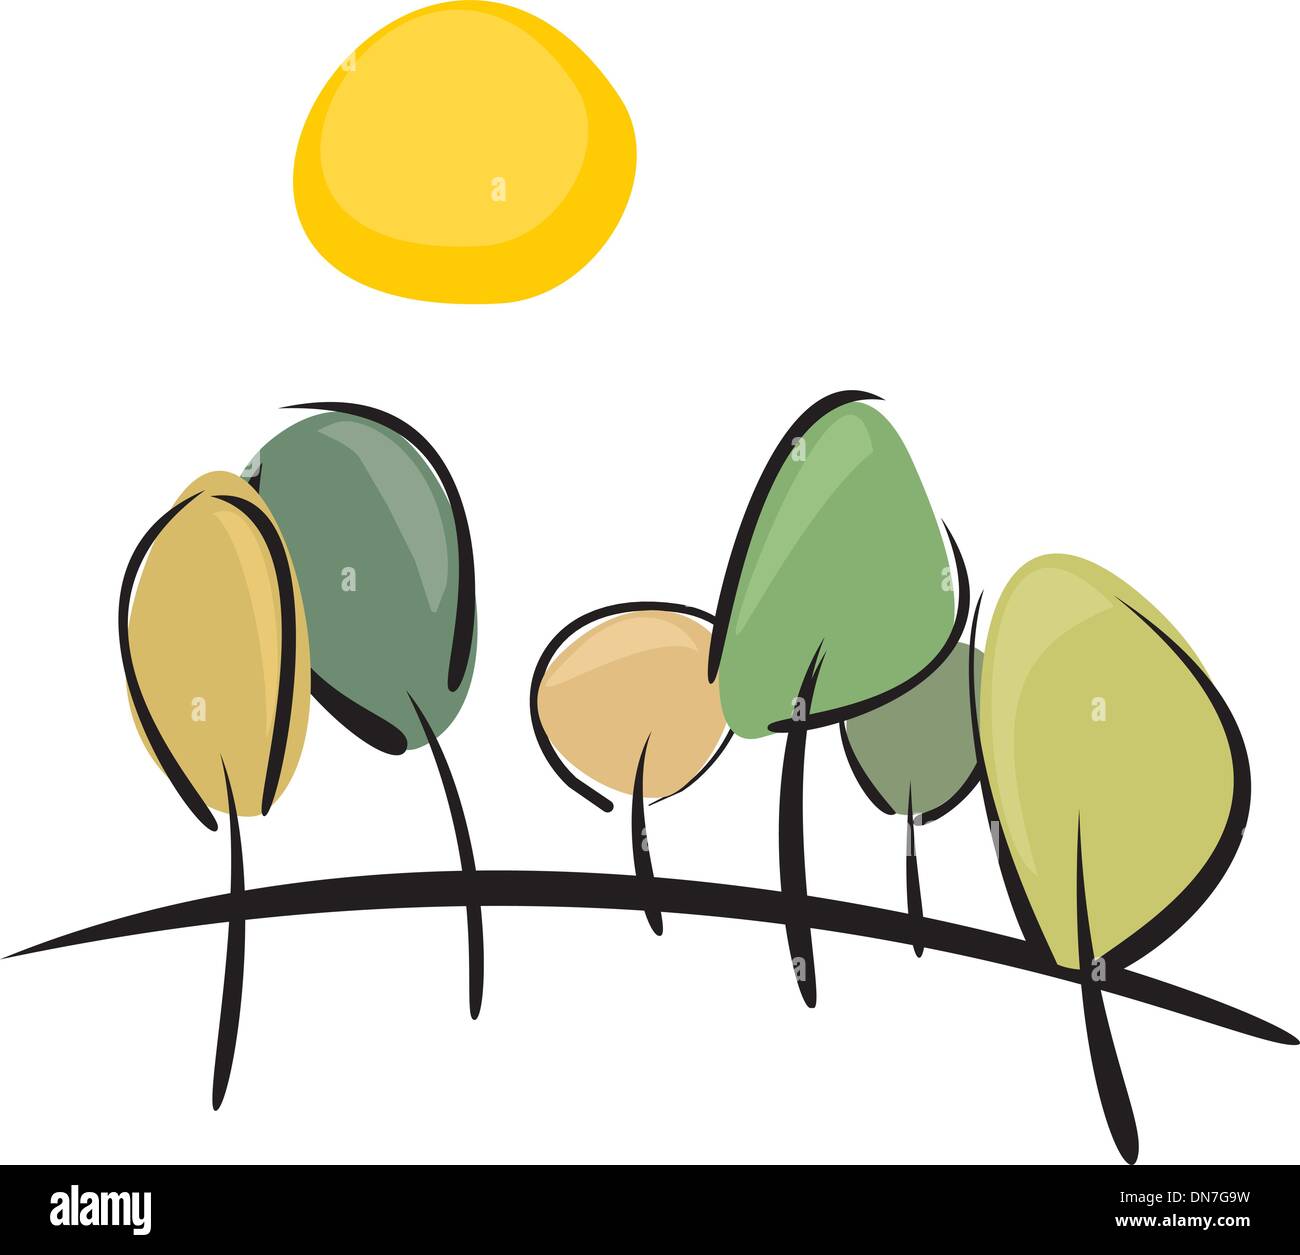 Vektor-Bäume auf Hügel am sonnigen Frühlings- oder Sommertag - Abbildung Landschaft grüner Hain und gelbe Sonne isoliert auf weiss Stock Vektor